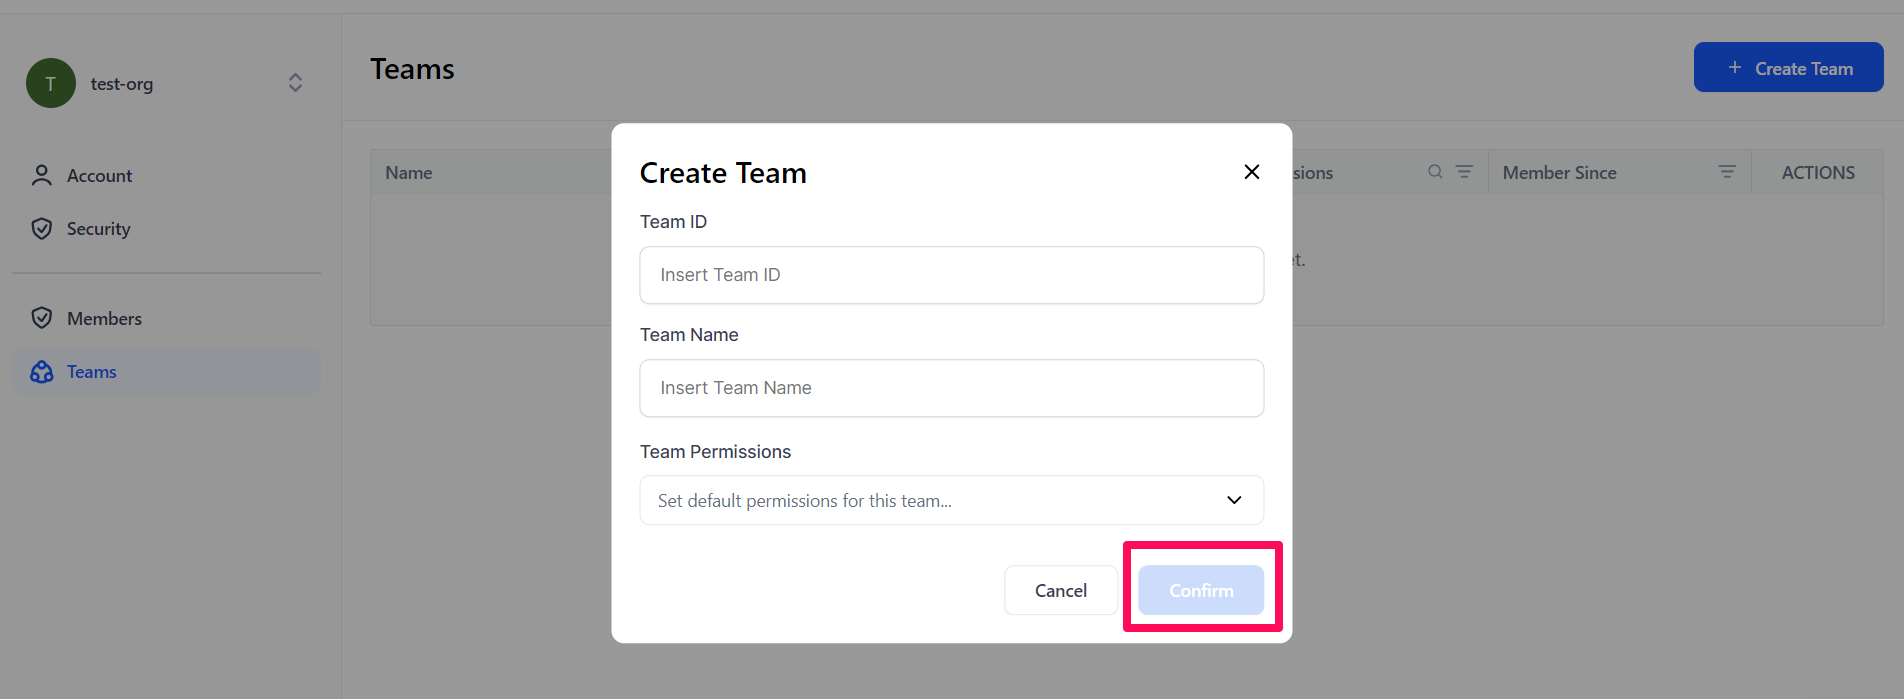 Create team dialog box